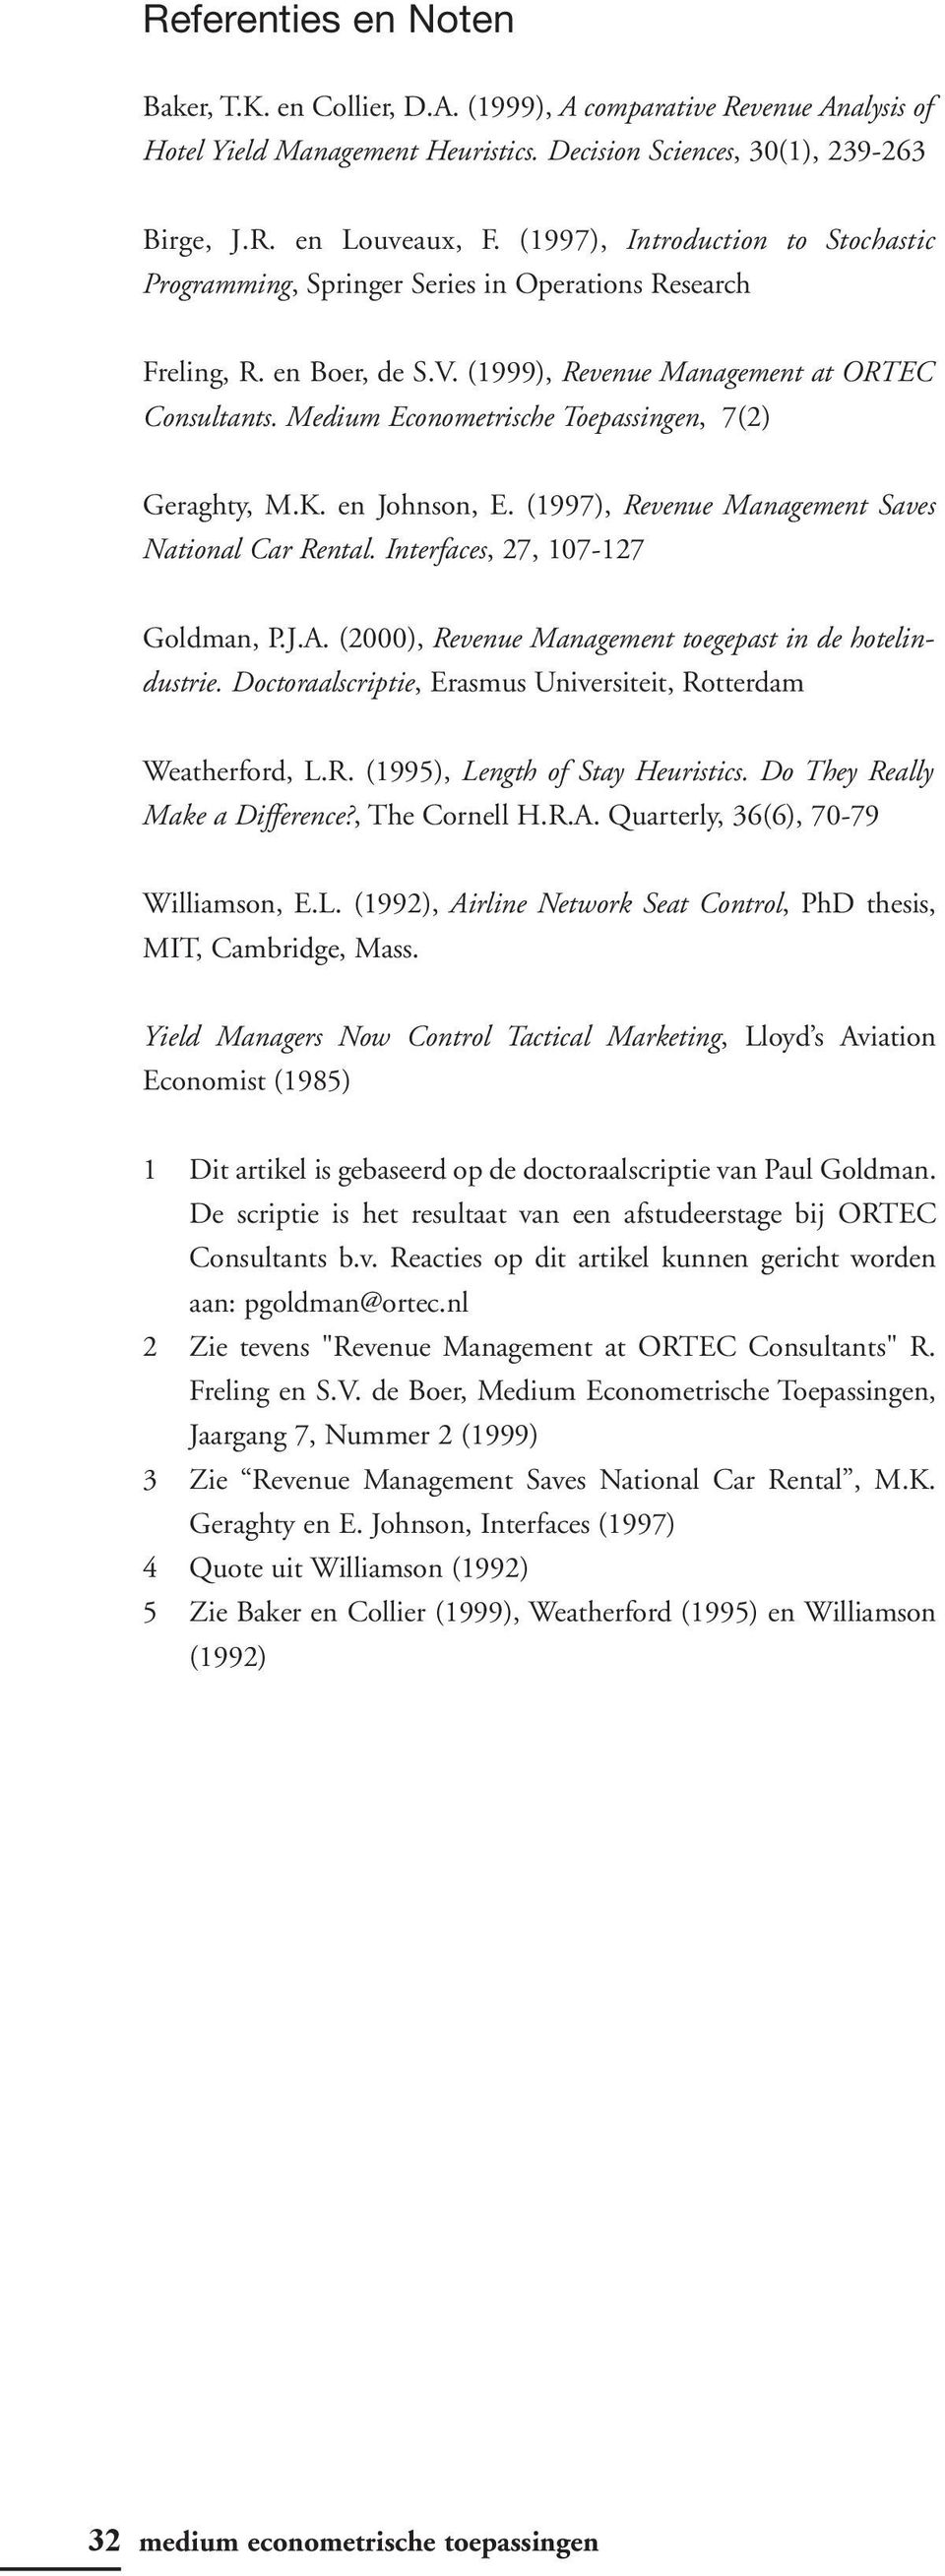 Medium Econometrische Toepassingen, 7(2) Geraghty, M.K. en Johnson, E. (1997), Revenue Management Saves National Car Rental. Interfaces, 27, 107-127 Goldman, P.J.A.